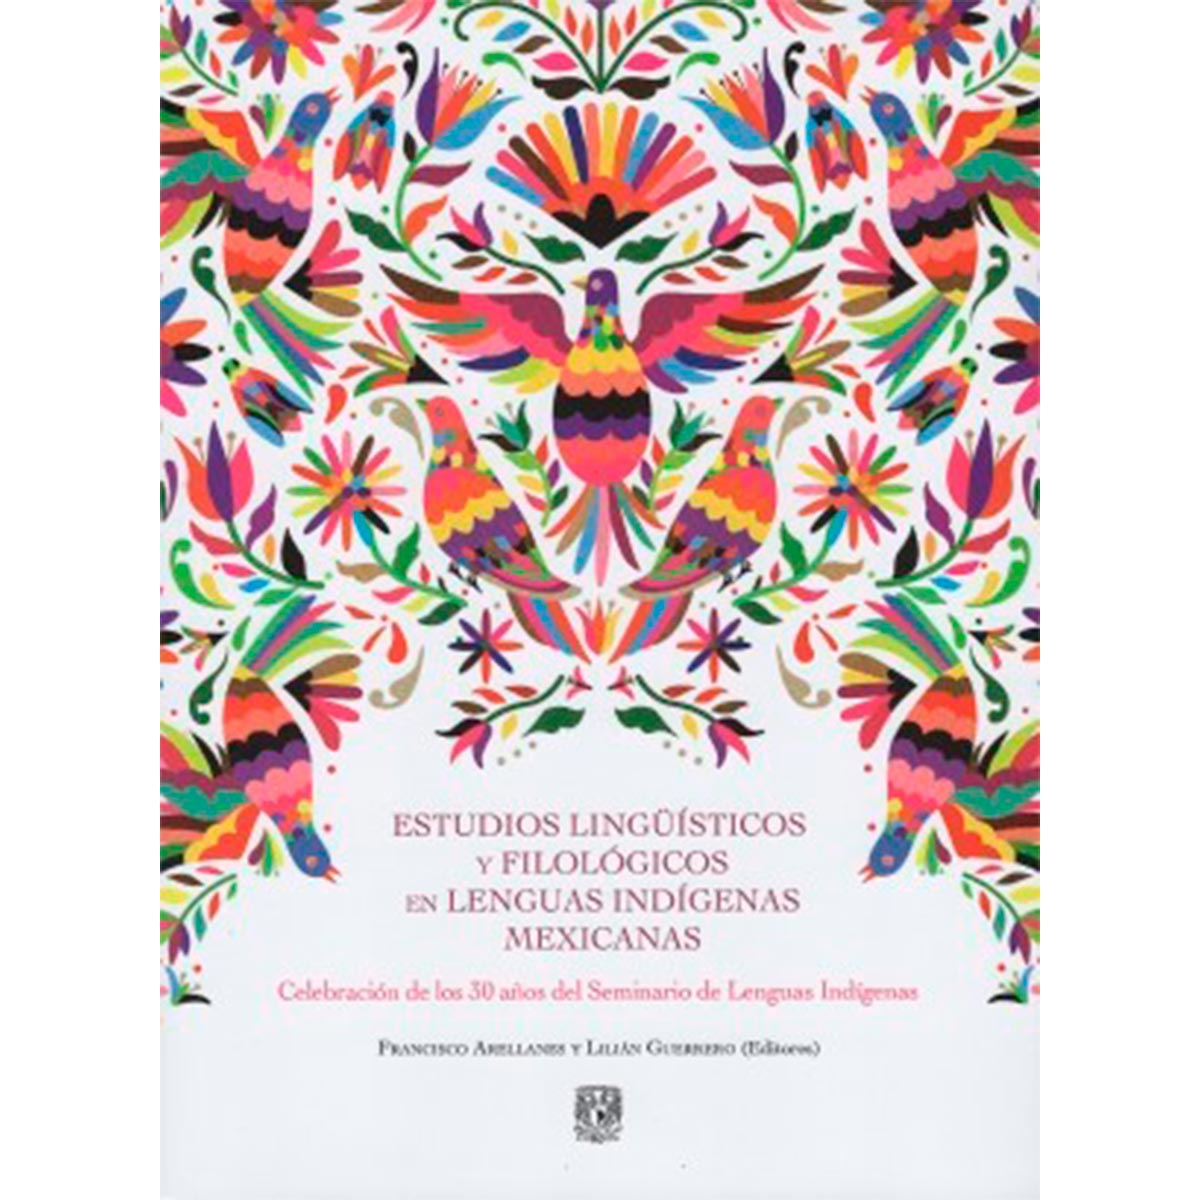 ESTUDIOS LINGÜÍSTICOS Y FILOLÓGICOS EN LENGUAS INDÍGENAS MEXICANAS. CELEBRACIÓN DE LOS 30 AÑOS DEL SEMINARIO DE LENGUAS INDÍGENAS